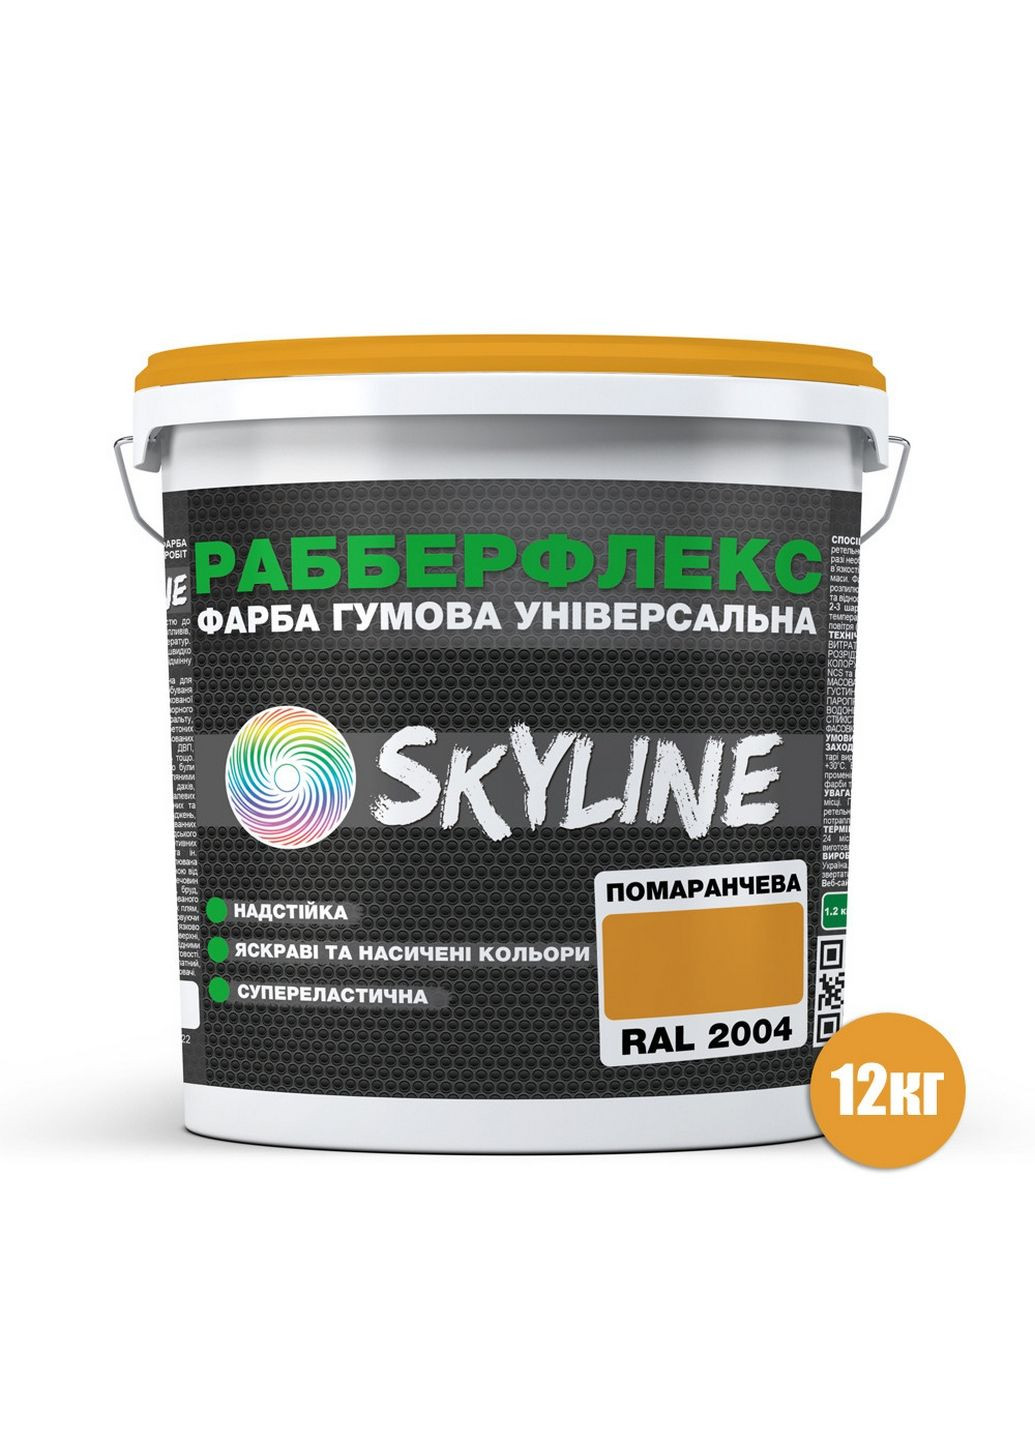 Надстійка фарба гумова супереластична «РабберФлекс» 12 кг SkyLine (289363695)